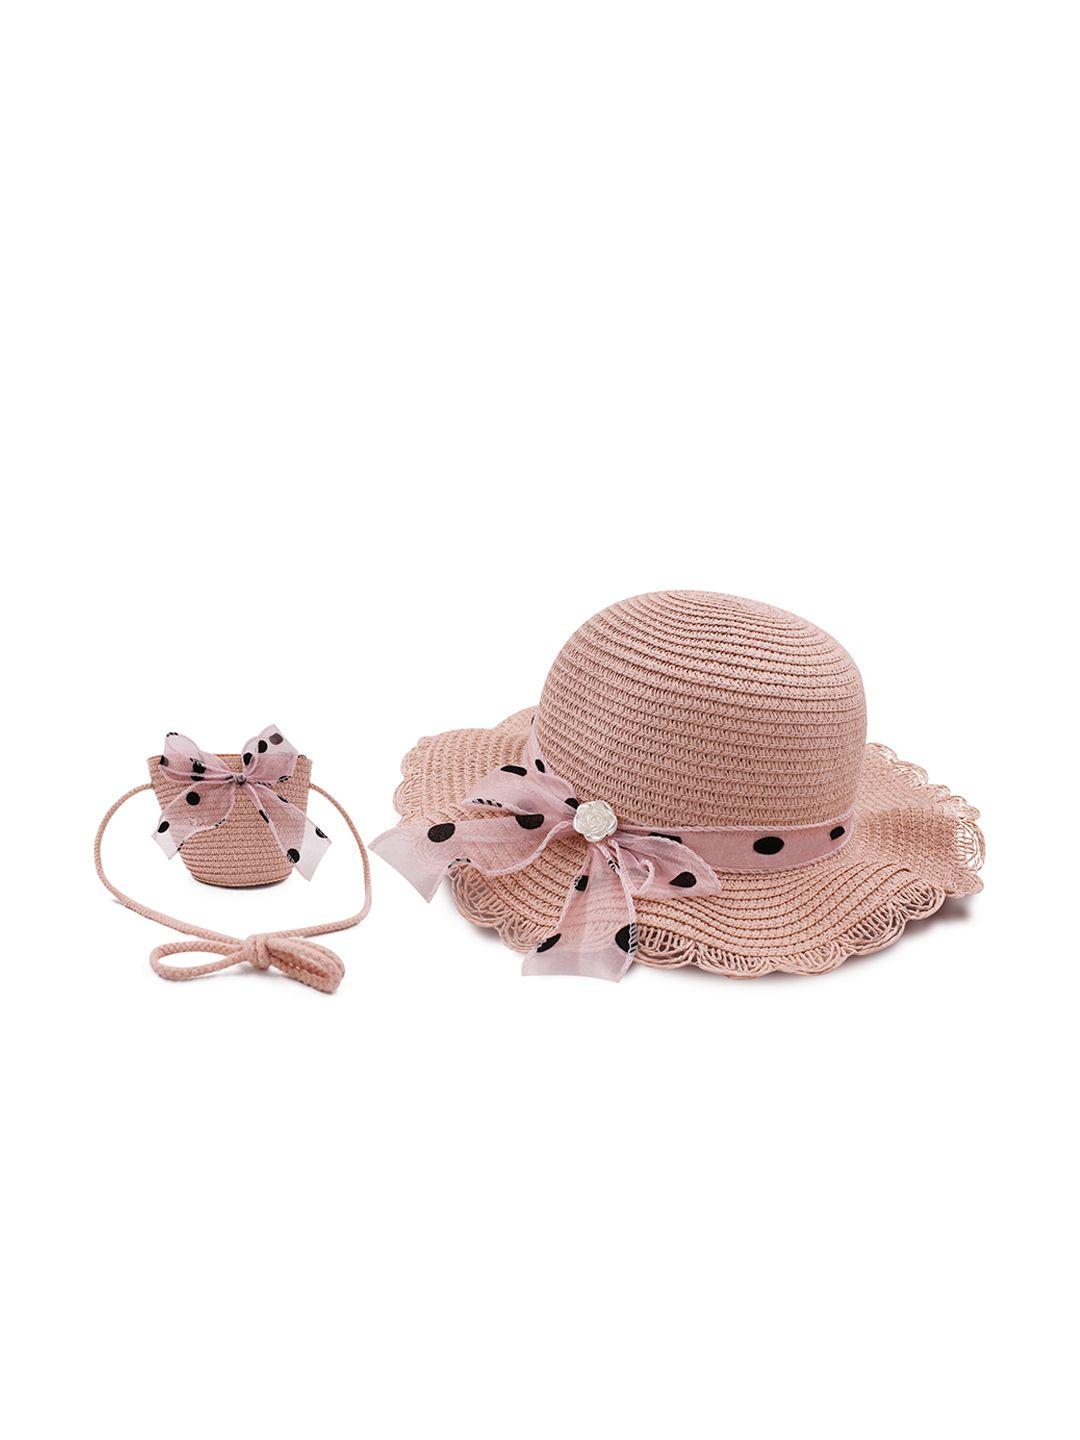 jenna girls polka dot self design bow sun hat & sling bag